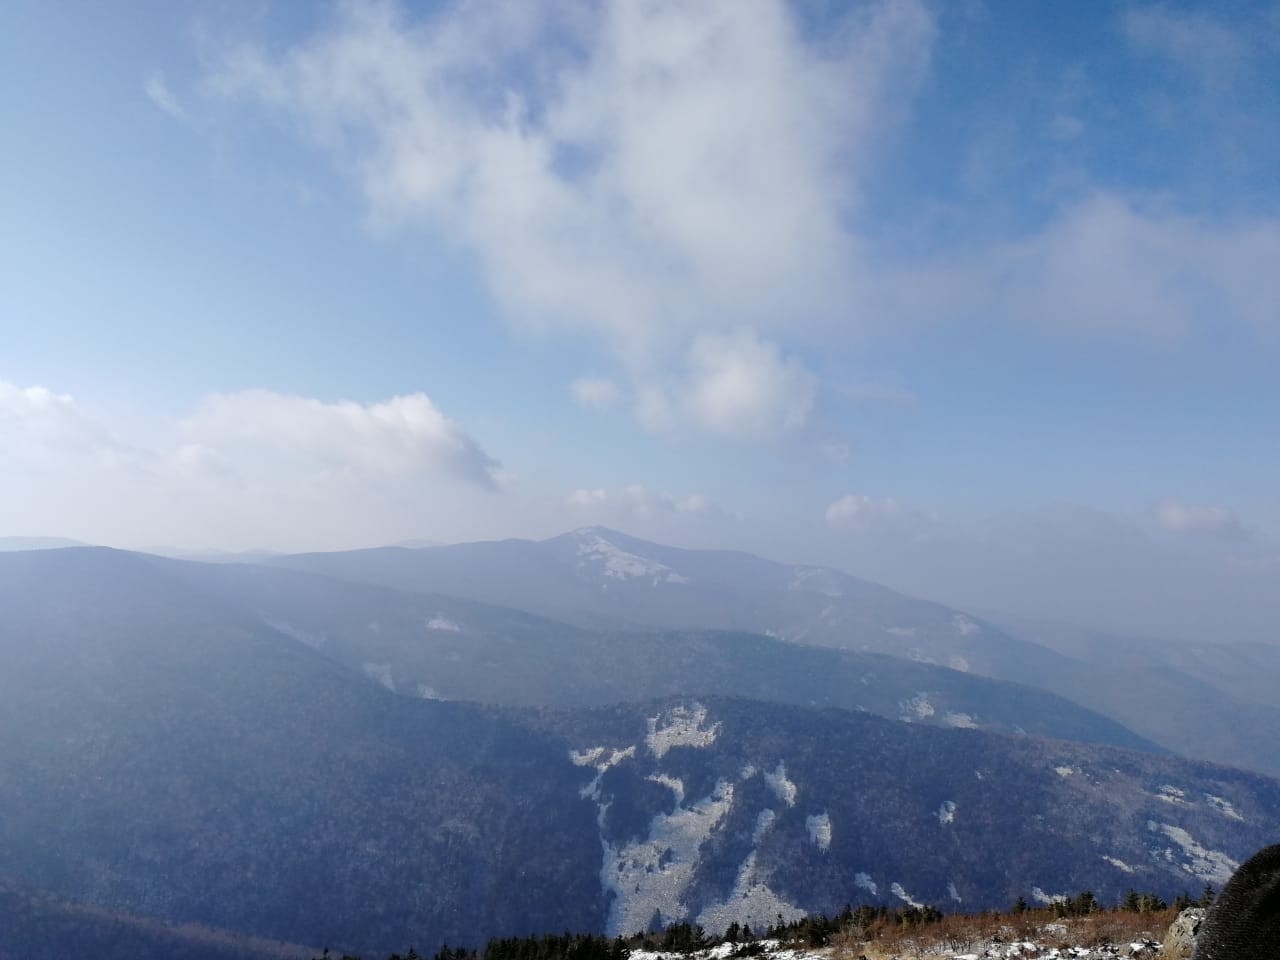 Гора Фалаза Приморский Край Фото